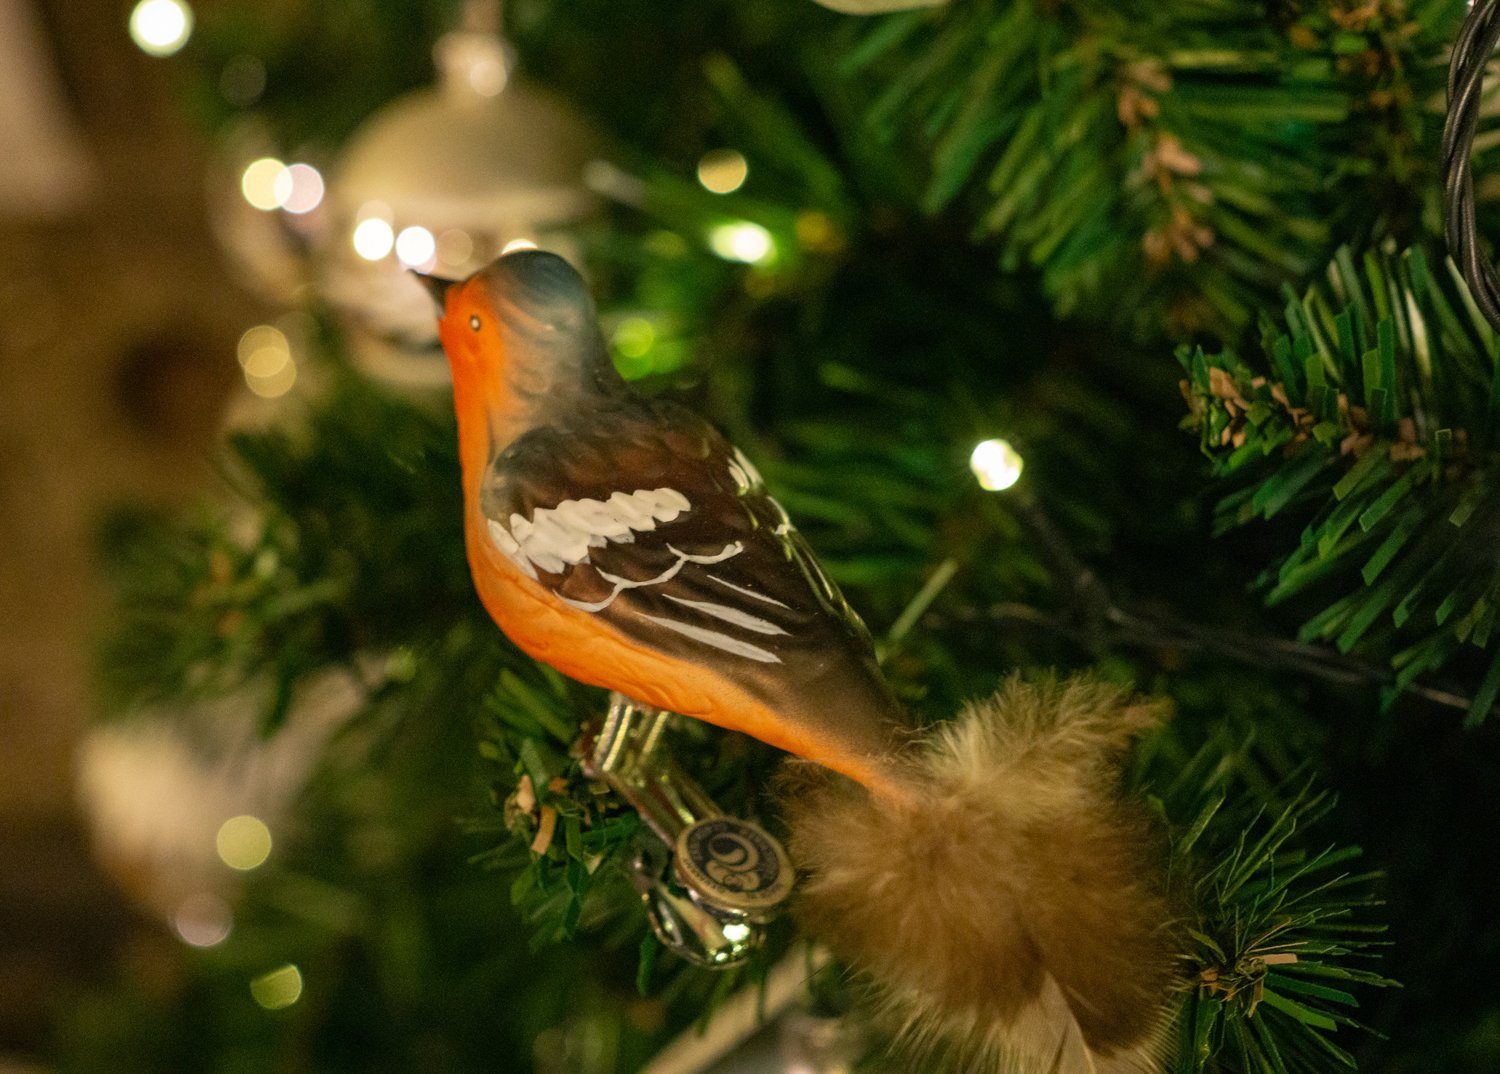 Buchfink mit Naturfeder, Glass handdekoriert, Birds of aus Christbaumschmuck eigener Herstellung mundgeblasen, Glasvogel